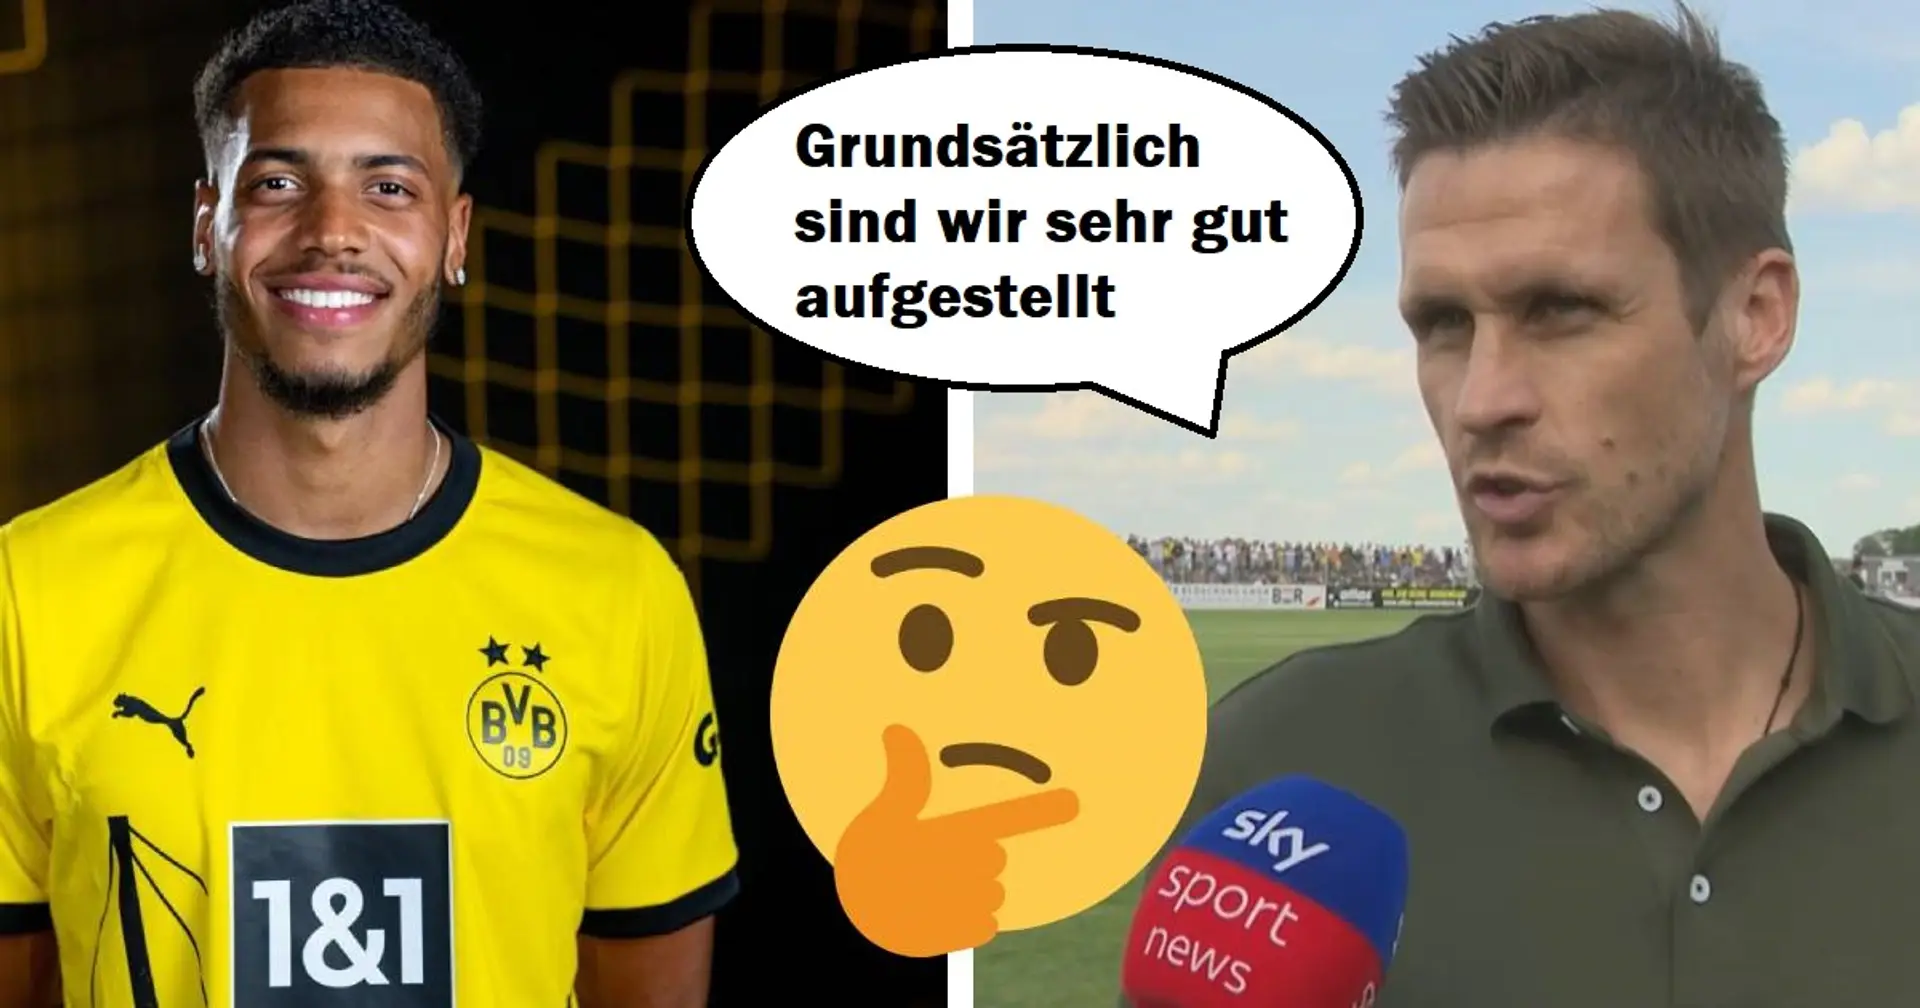 "Jetzt ersetzt Felix Nmecha gleich drei Spieler": Fans wundern sich über Kehls Worte, der den BVB sehr gut aufgestellt sieht